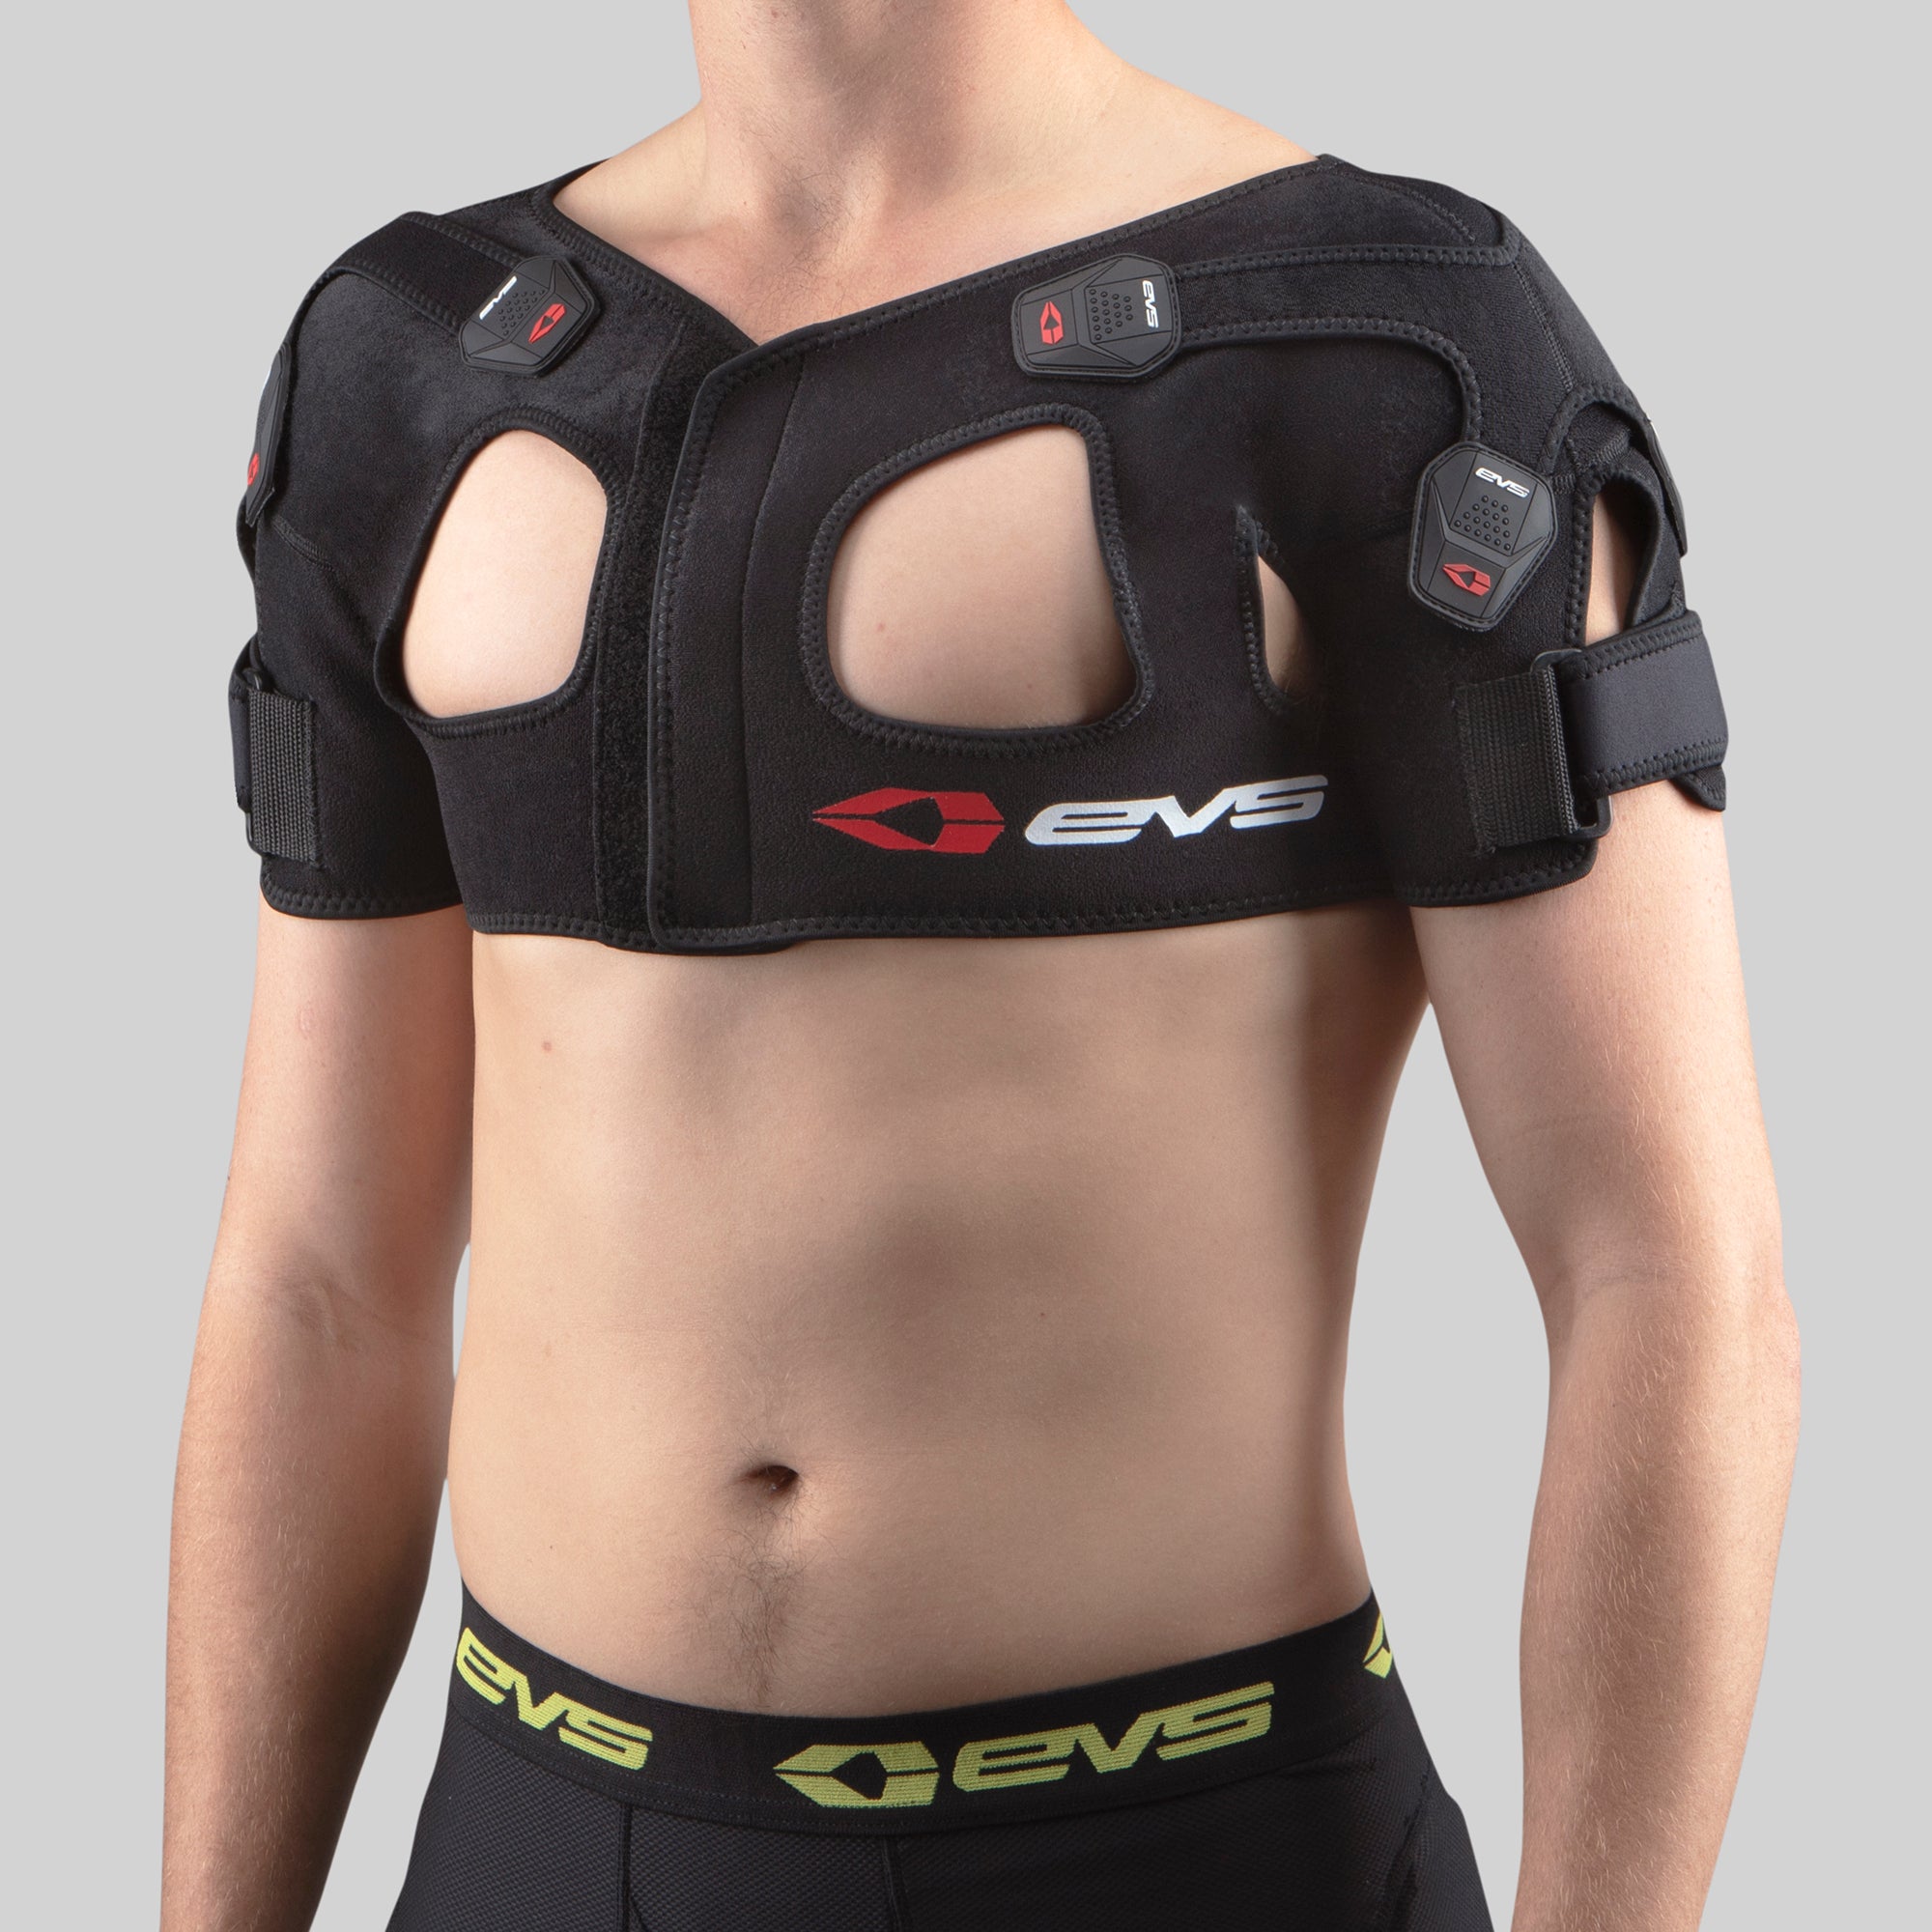  EvAnem Double Shoulder Support Shoulder Wrap Protector